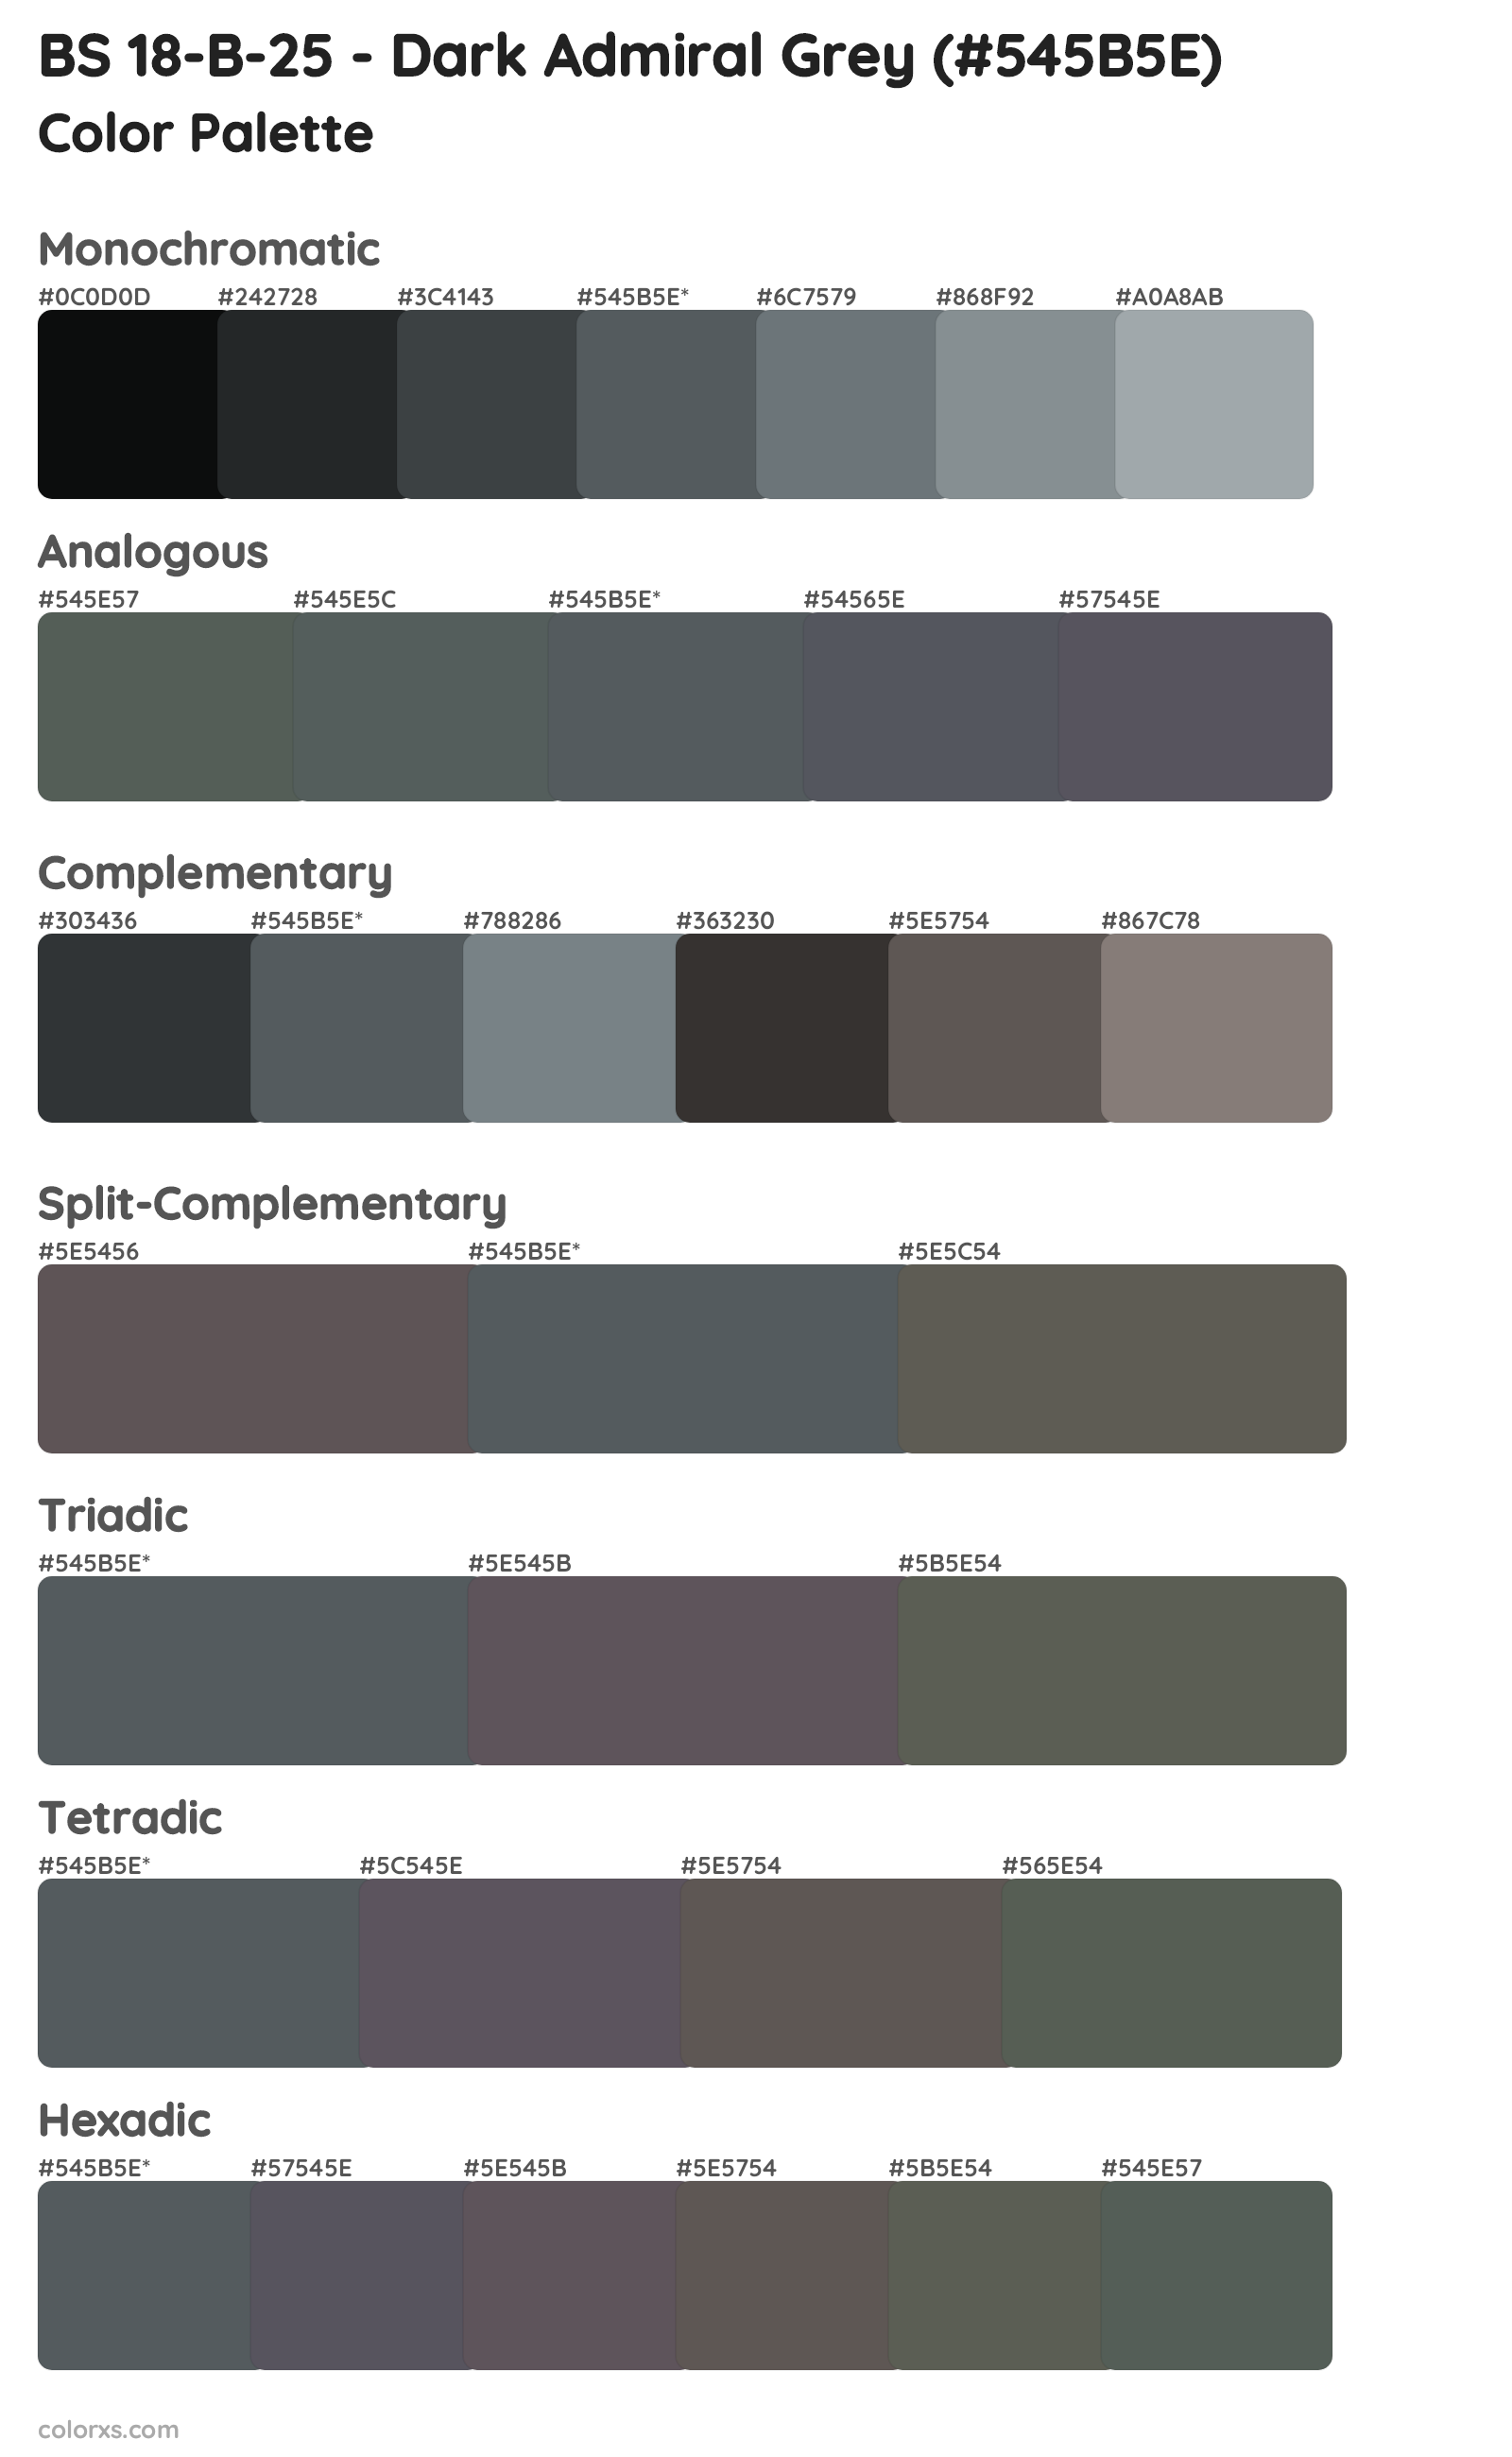 BS 18-B-25 - Dark Admiral Grey Color Scheme Palettes